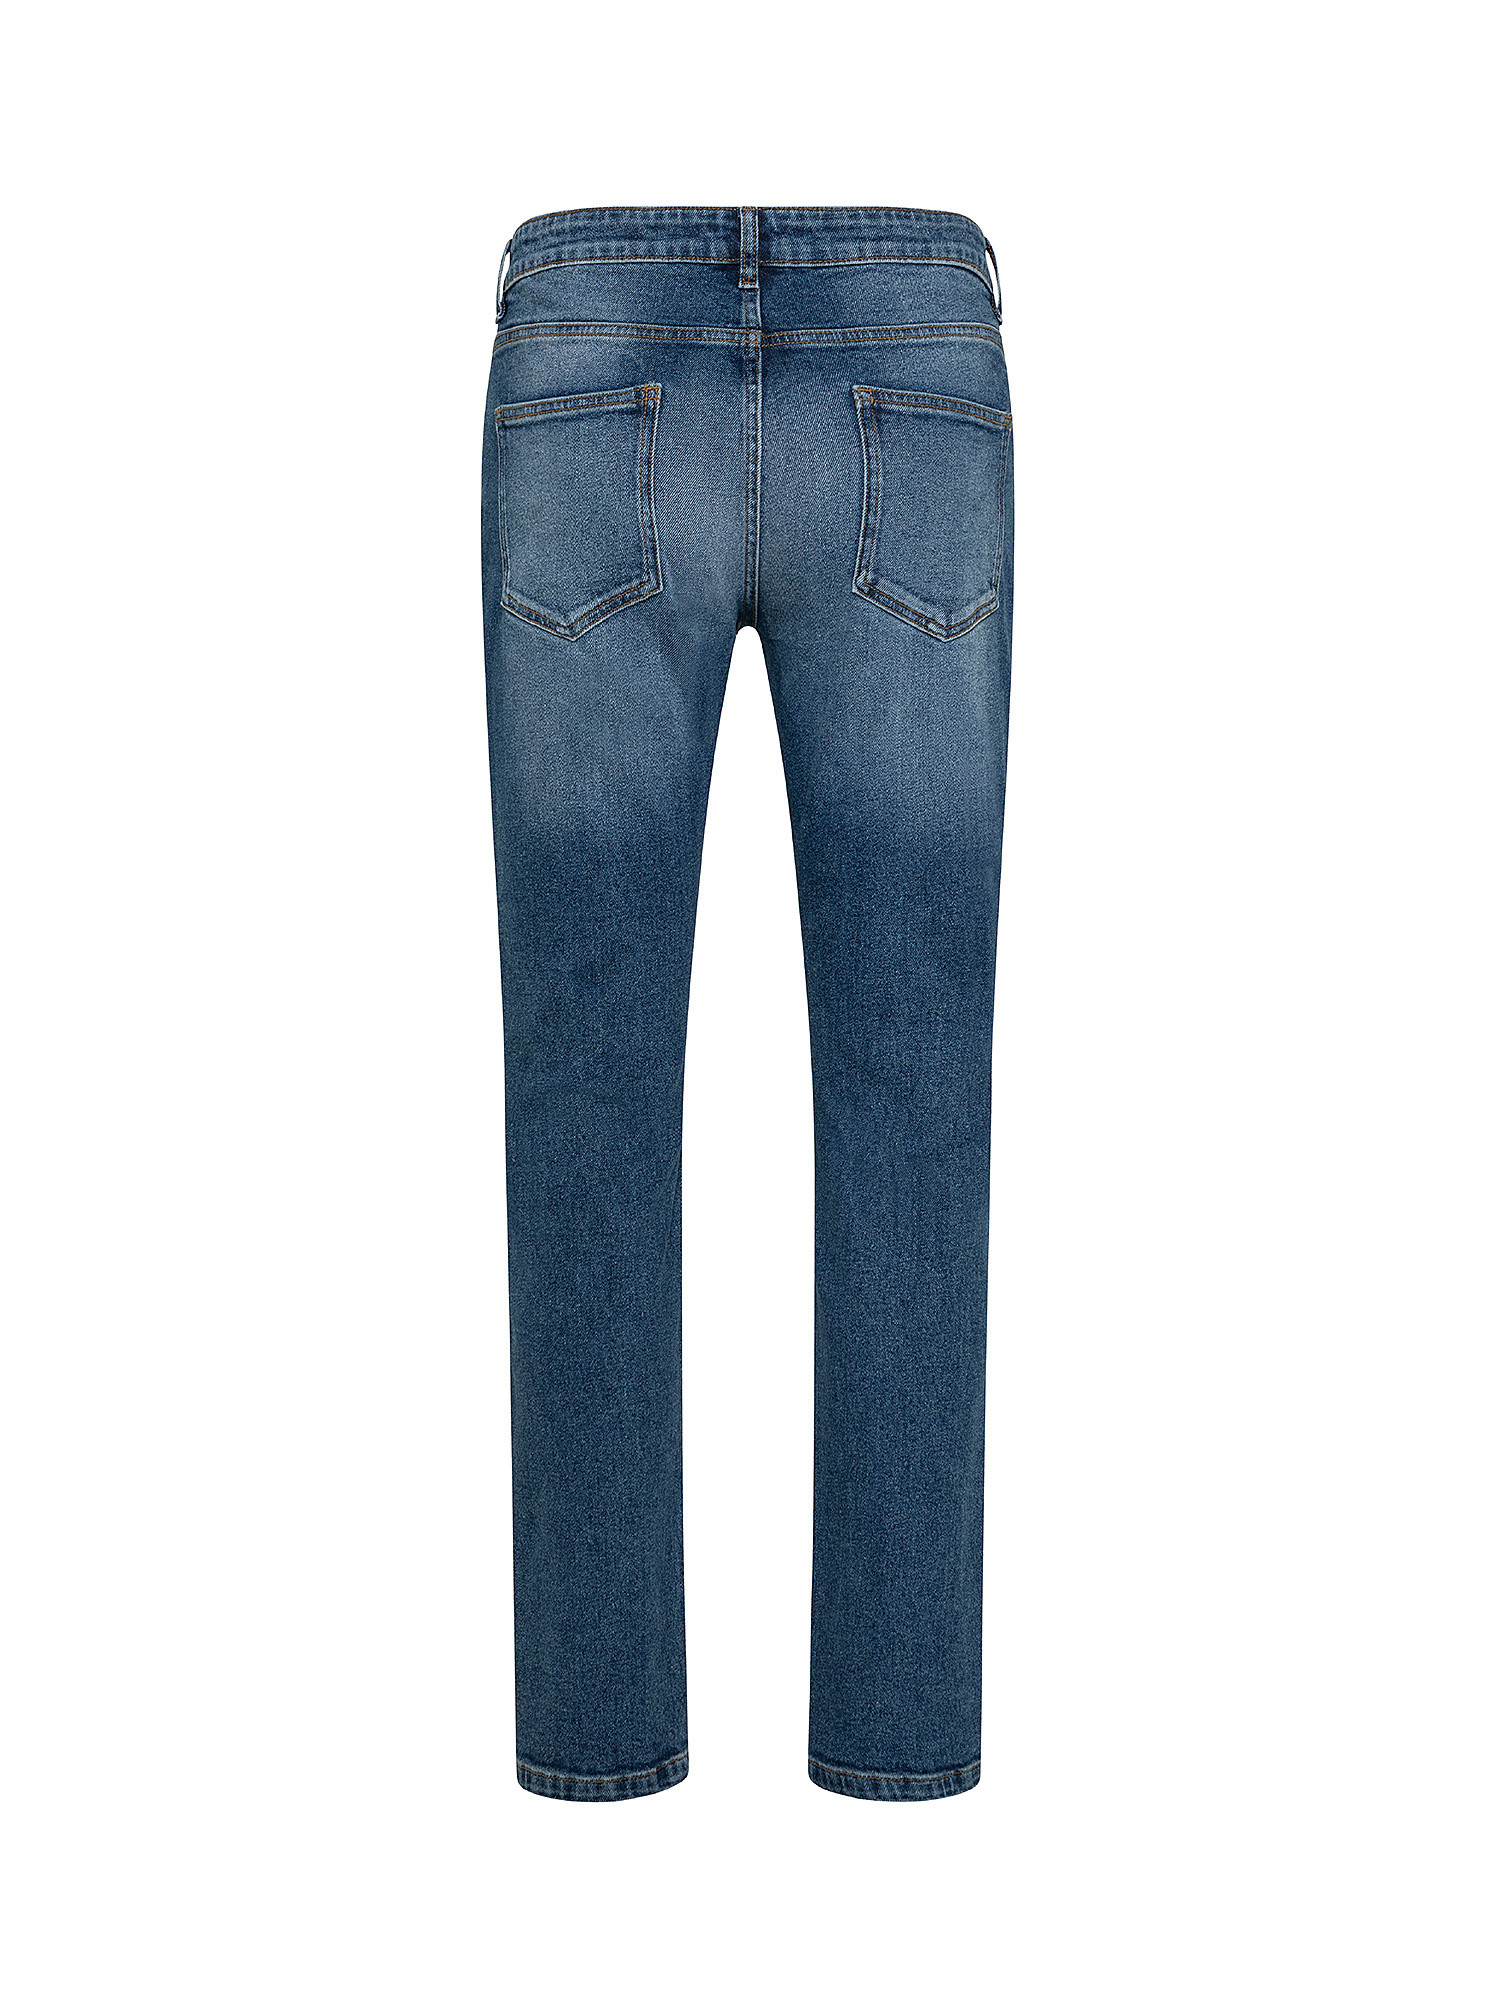 Five pocket jeans, Dark Blue, large image number 1